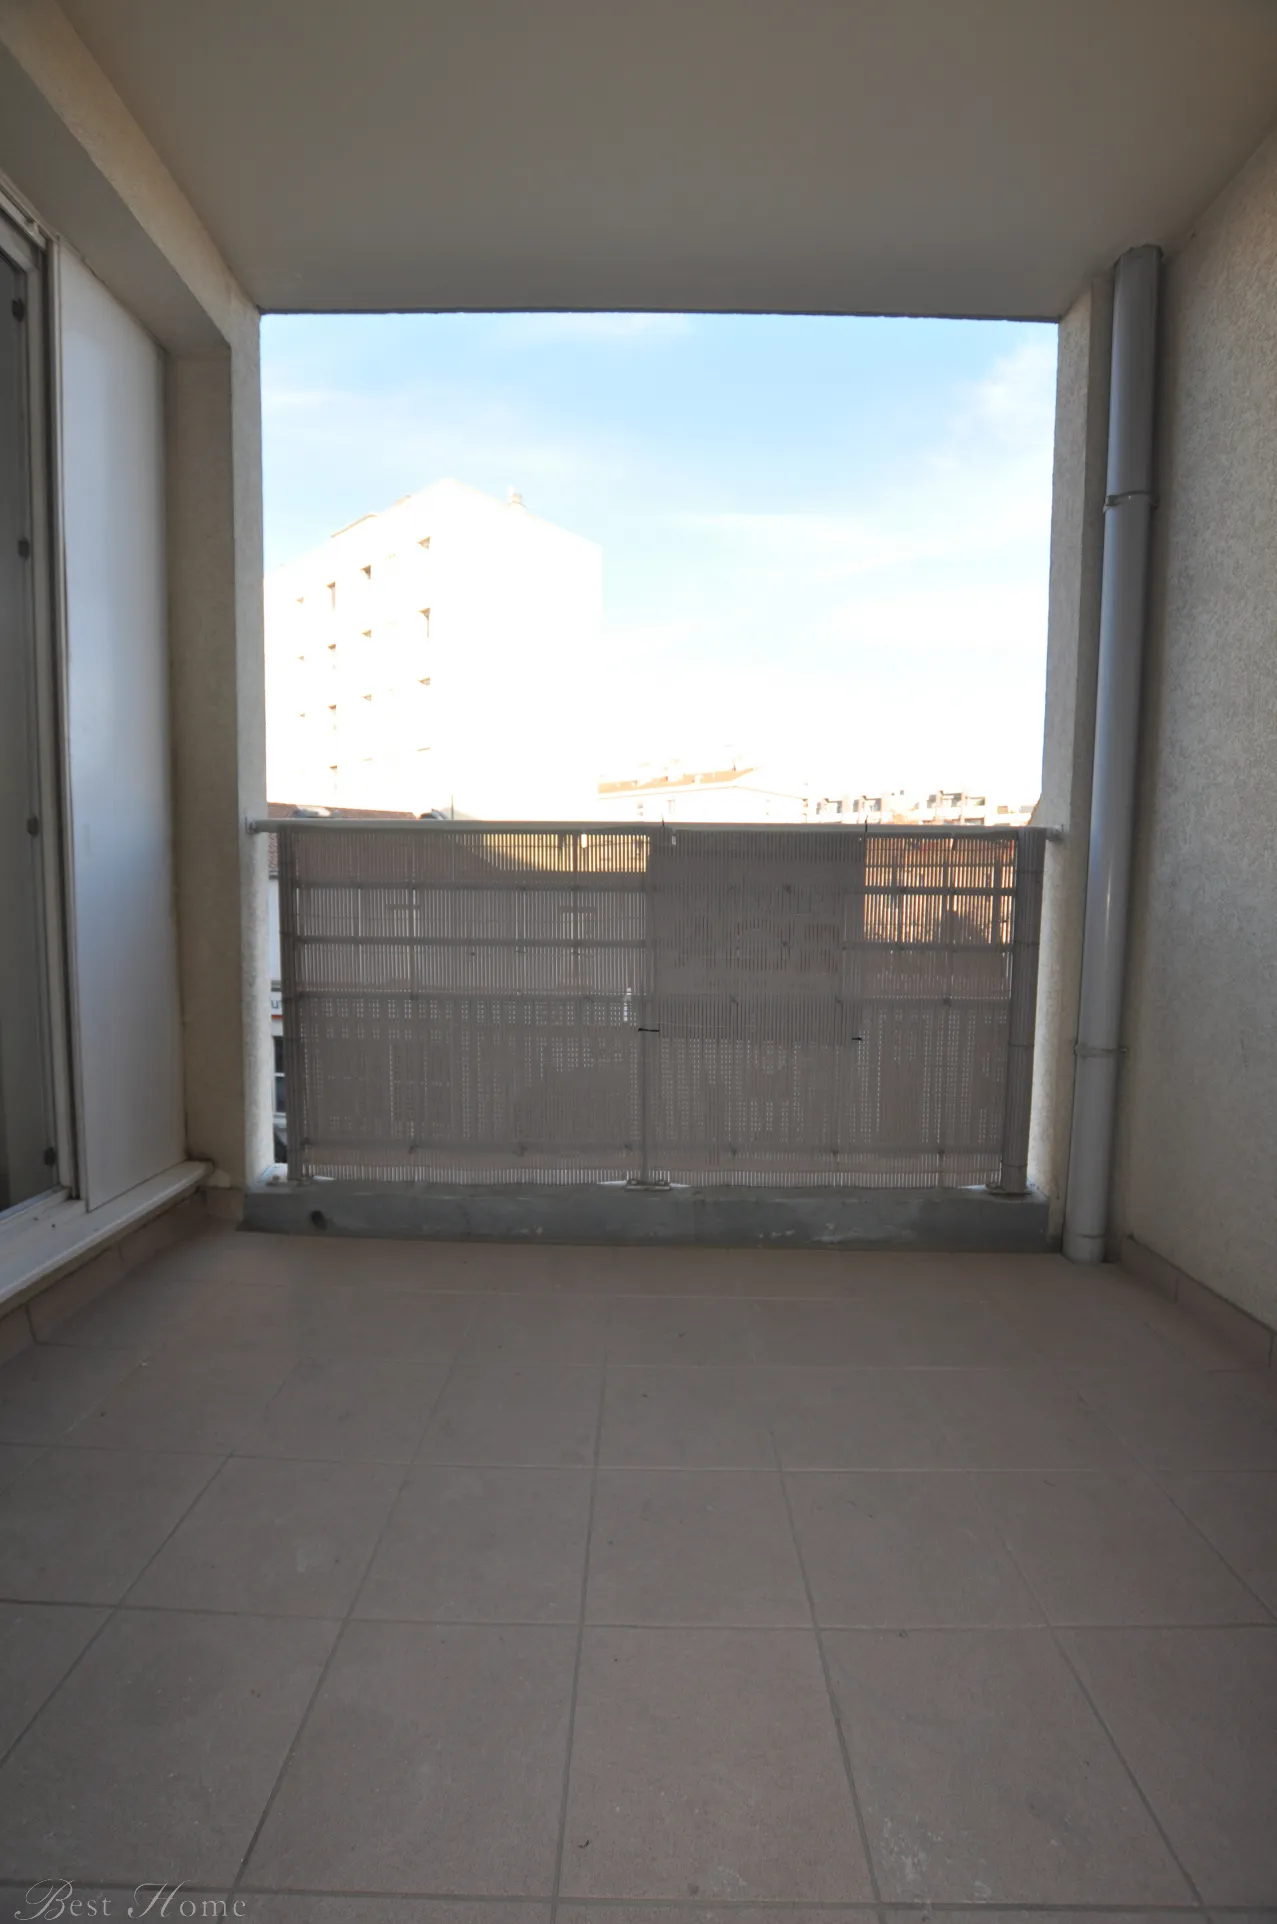 Vente appartement de type 2 avec terrasse à Nîmes 